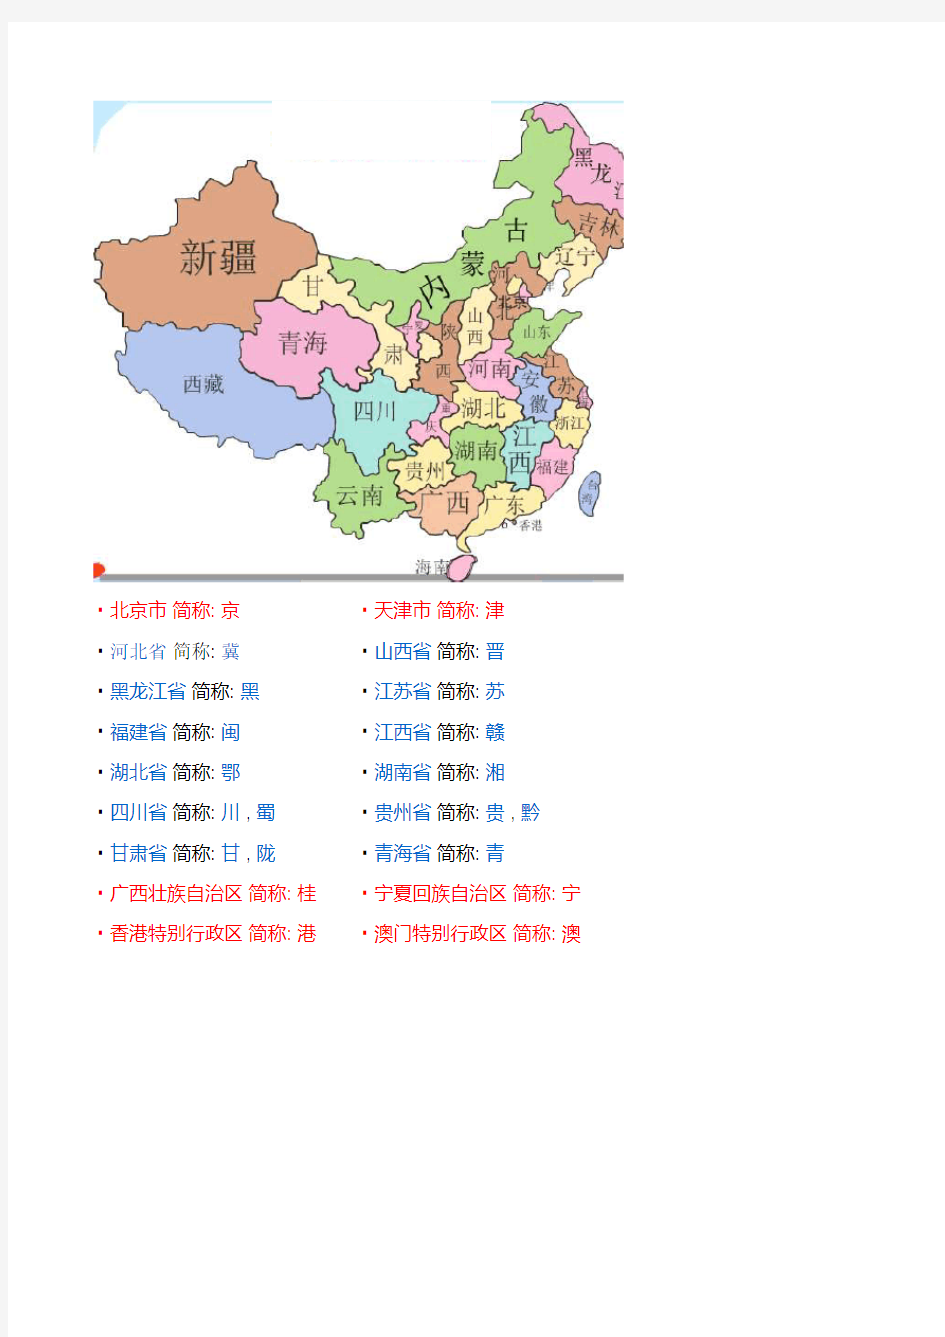 中国省份地图及简称 (2)